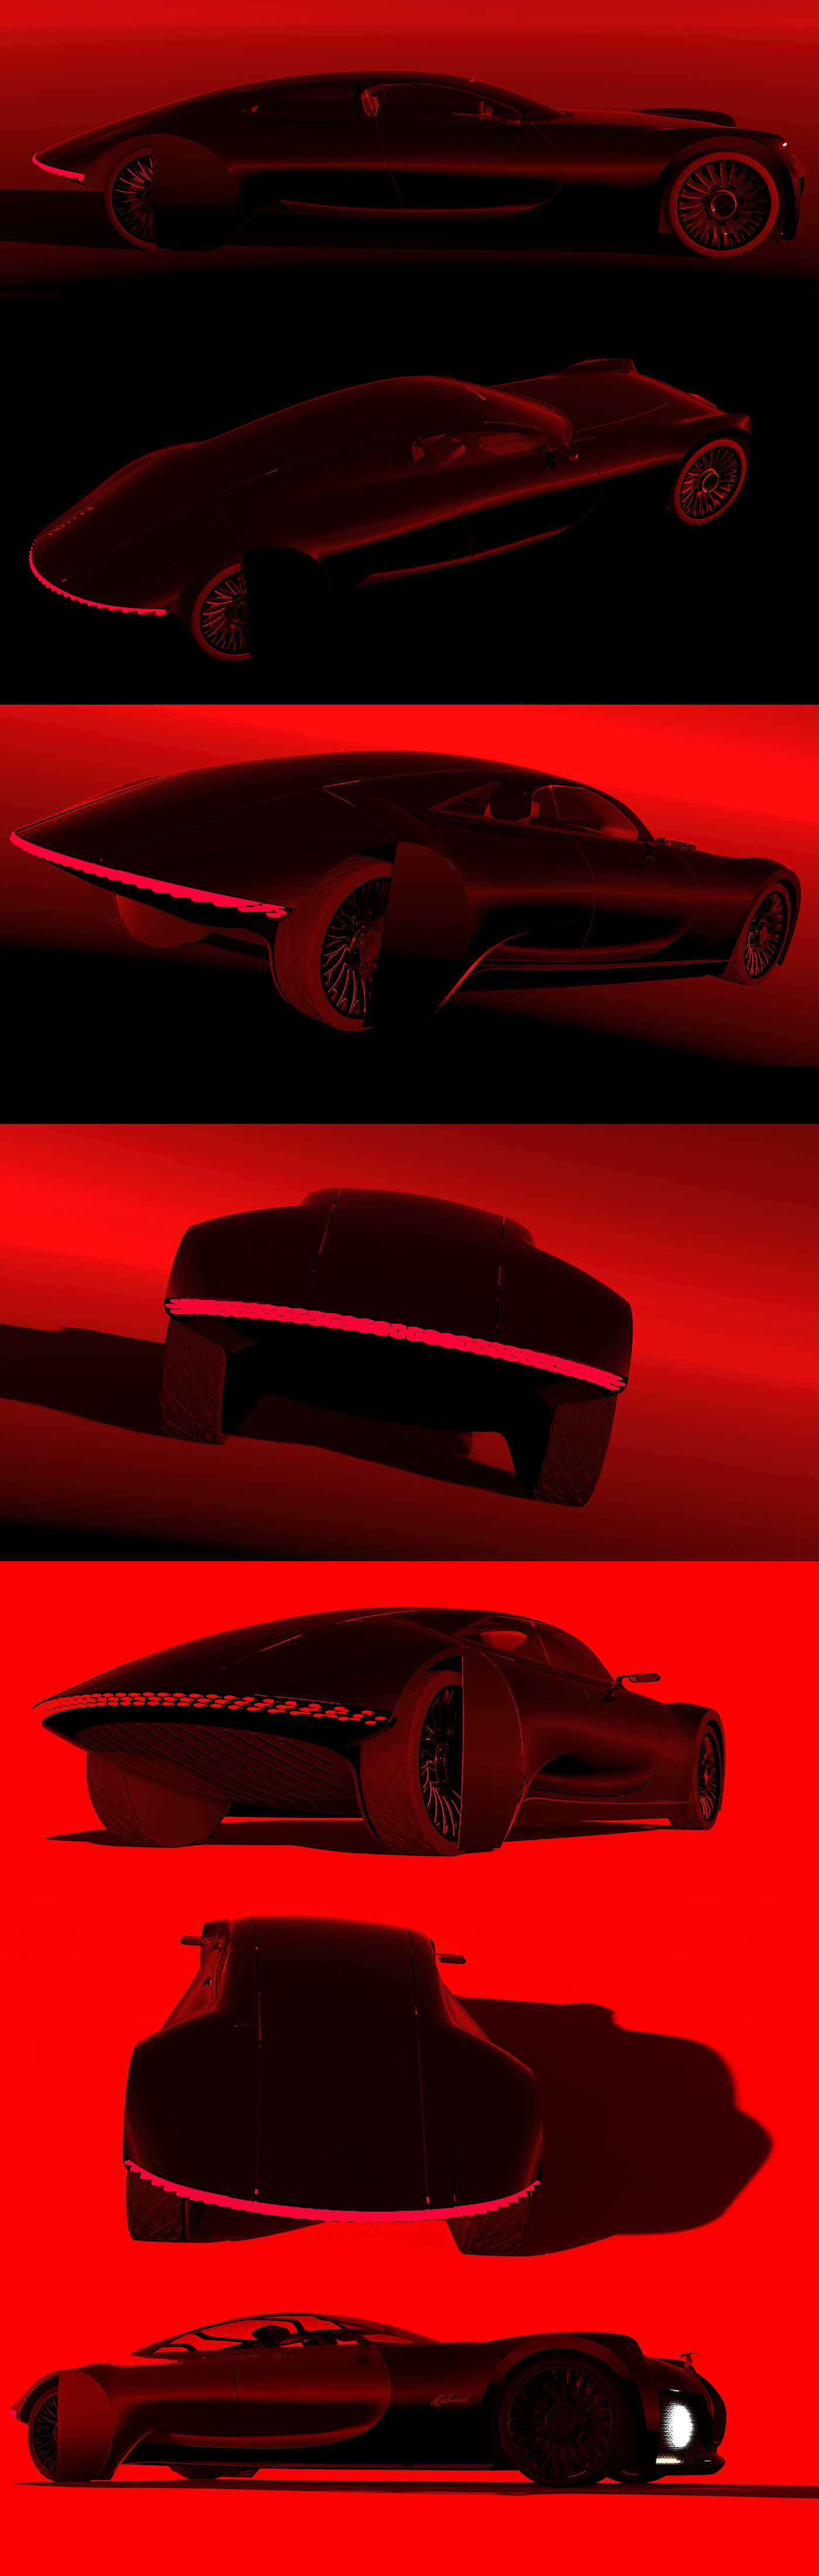 HispanoSuiza sedan concept conceptcar Render 3D cardesign car design